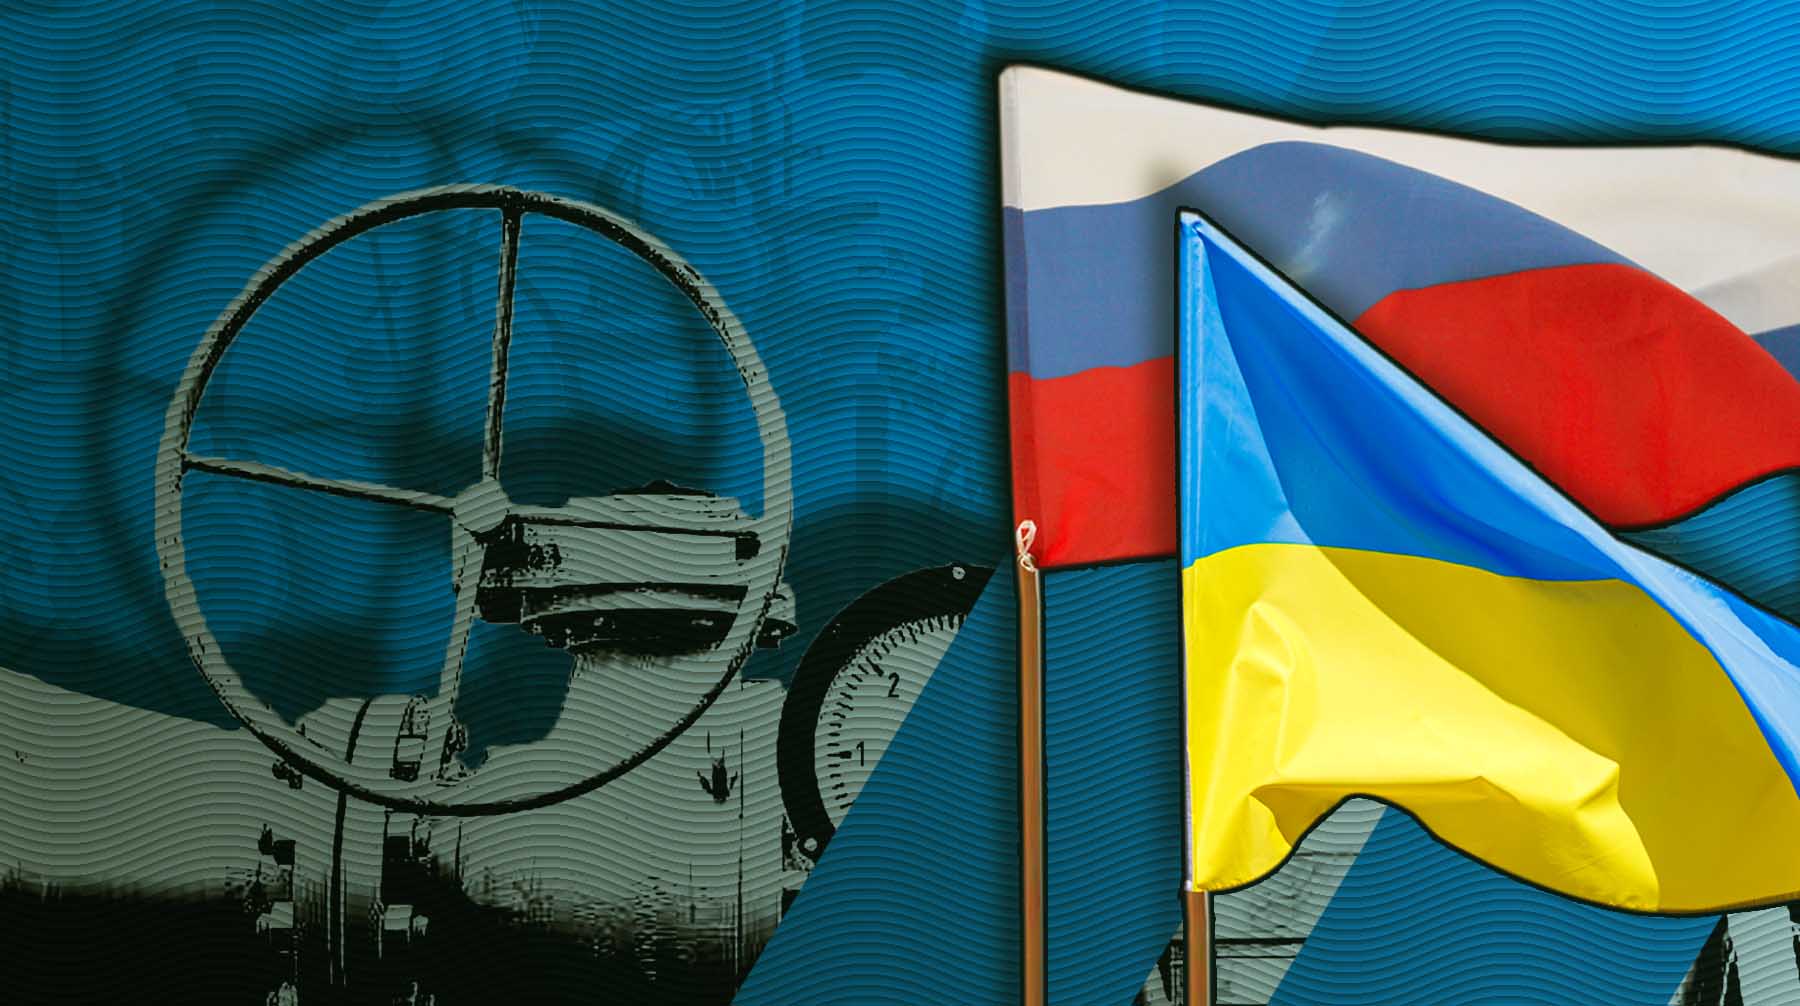 Газ всему голова. В РАН и МГИМО объяснили, почему Украина сохраняет транзит российского топлива в Европу